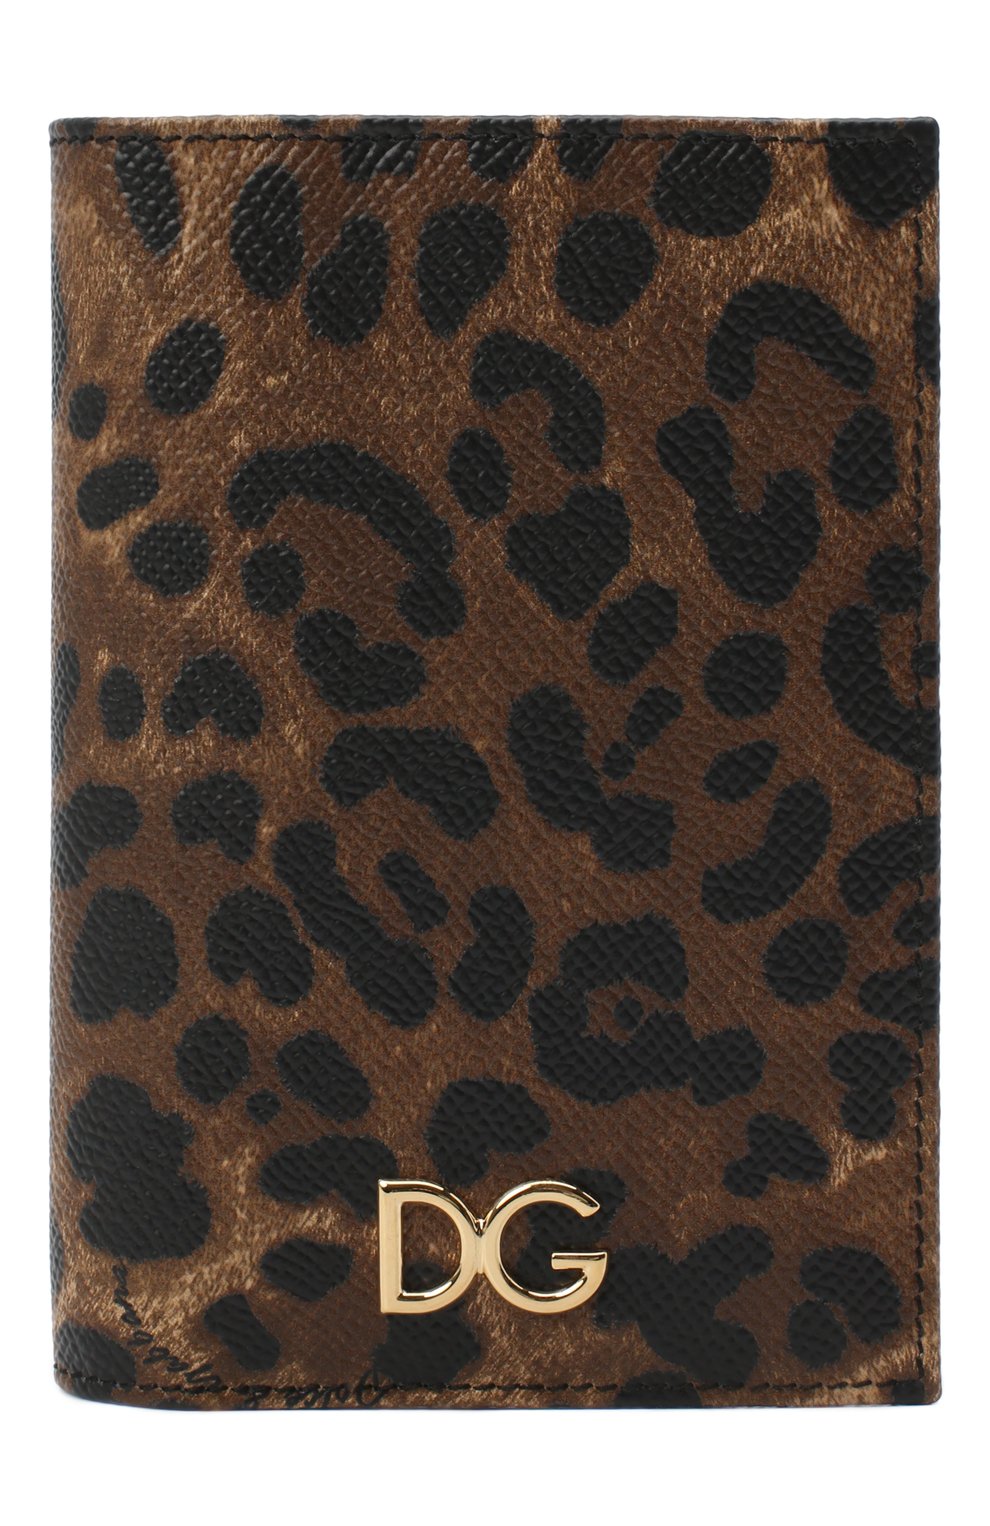 Обложки и футляры Dolce & Gabbana, Кожаная обложка для паспорта с леопардовым принтом Dolce & Gabbana, Италия, Леопардовый, Кожа: 100%;, 4778227  - купить